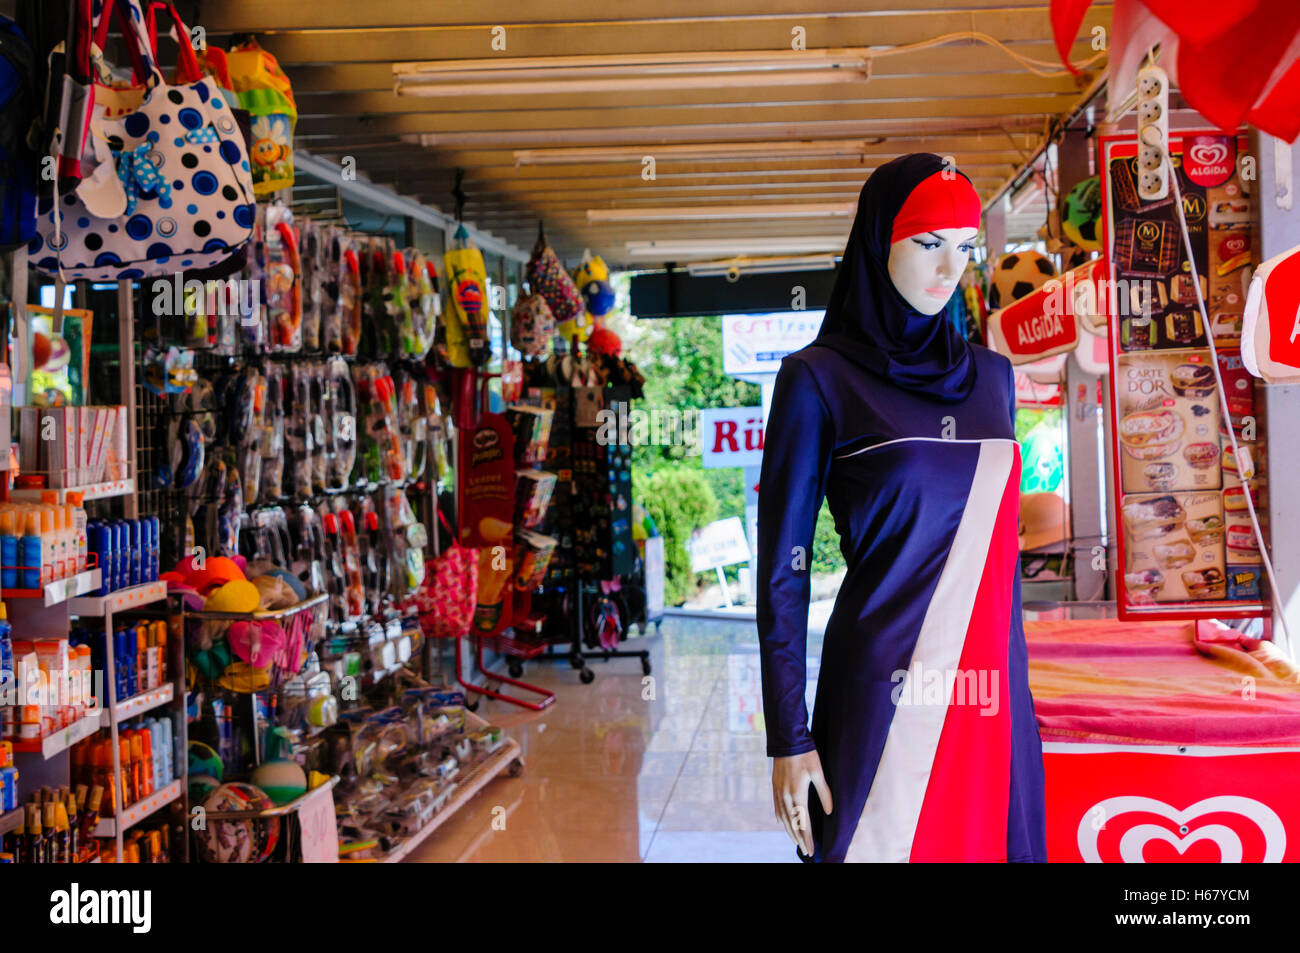 Schaufensterpuppe trägt eine "Burkini" Bademode entworfen für muslimische Frauen, ihre Bescheidenheit zu bewahren Stockfoto